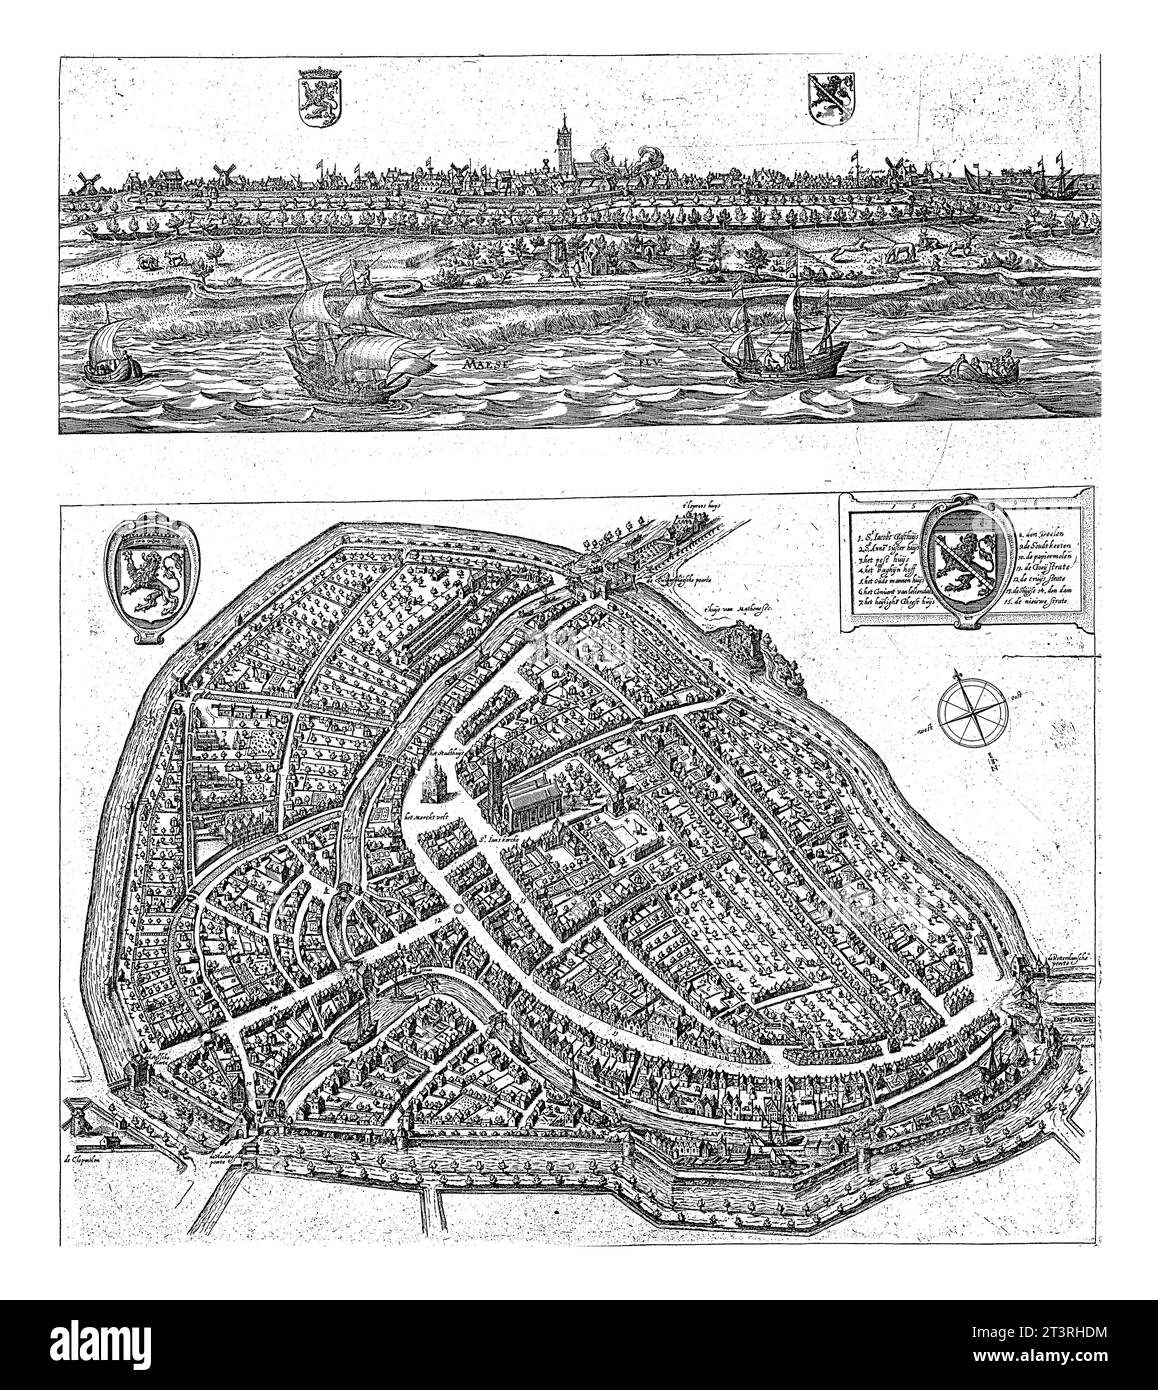 Panorama e mappa di Schiedam, 1598, Jacob de Gheyn (II), 1700 - 1800 sopra un panorama di Schiedam, con il fiume Maas in primo piano e il Sint- Foto Stock